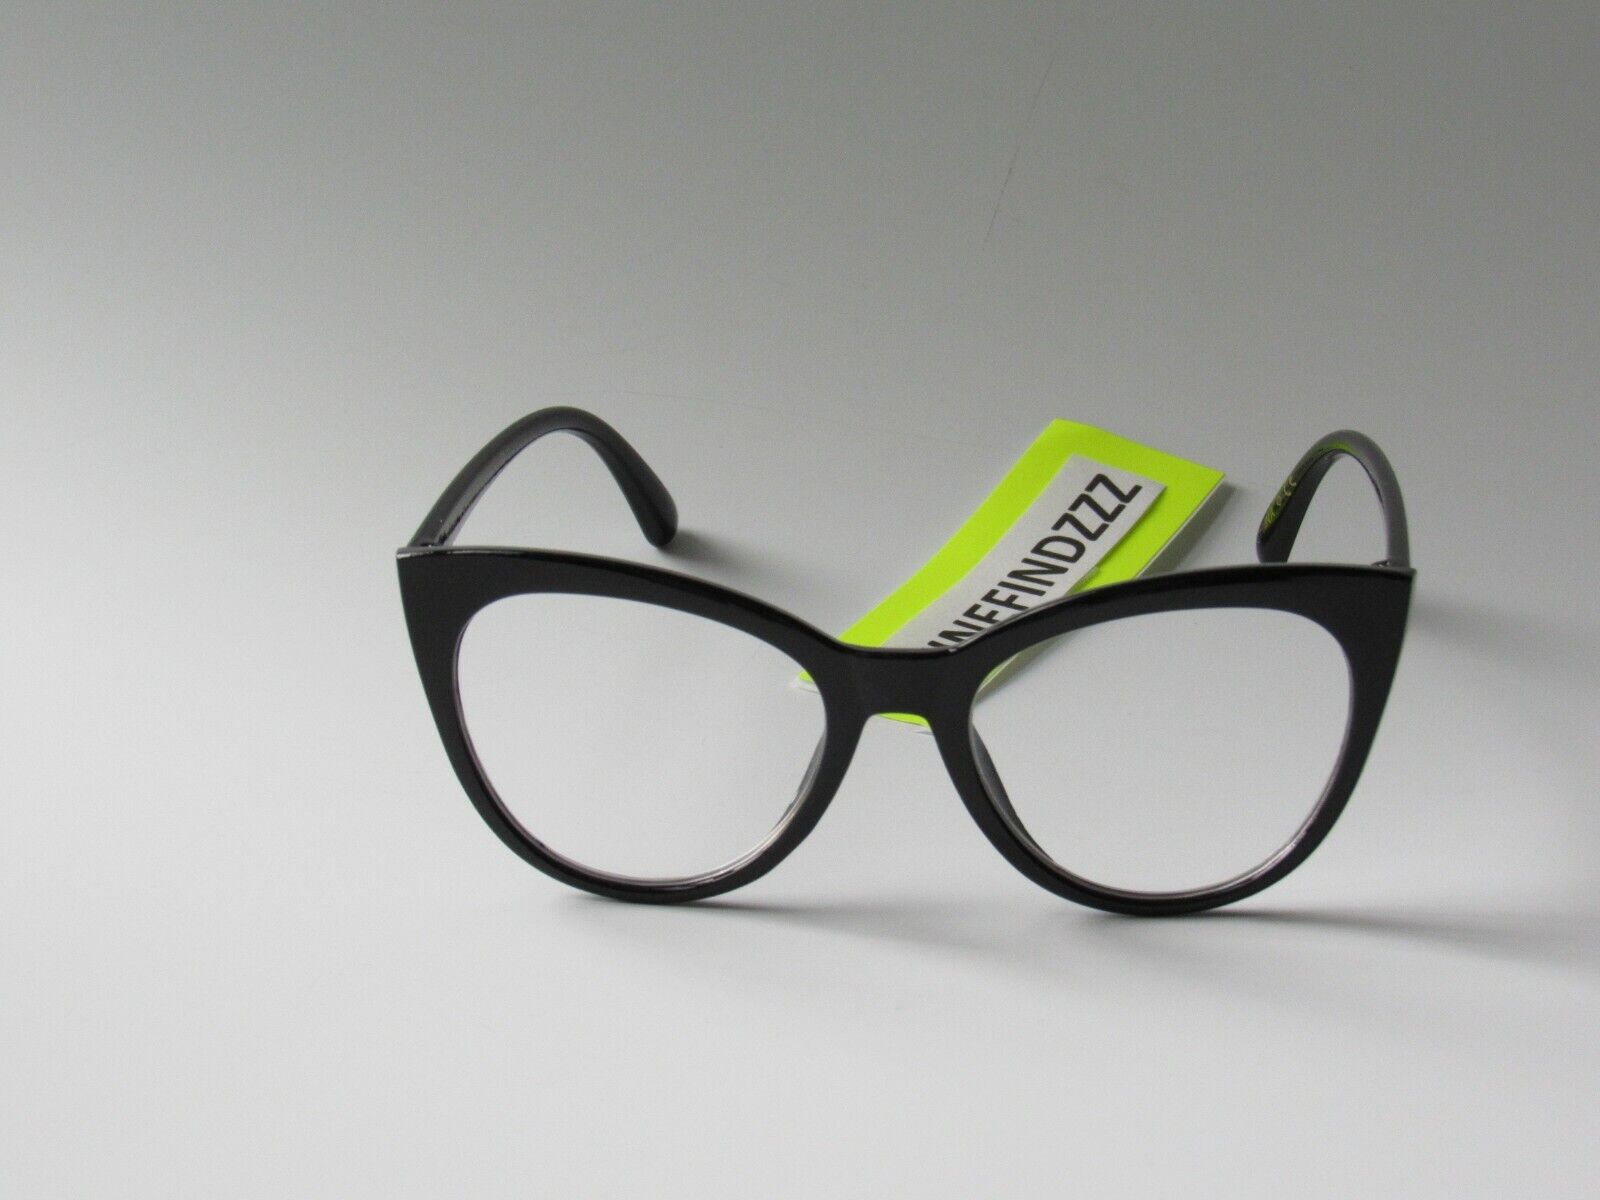 BETSEY JOHNSON Large Cat Eye Black Reader Glasses +2.00 NEW